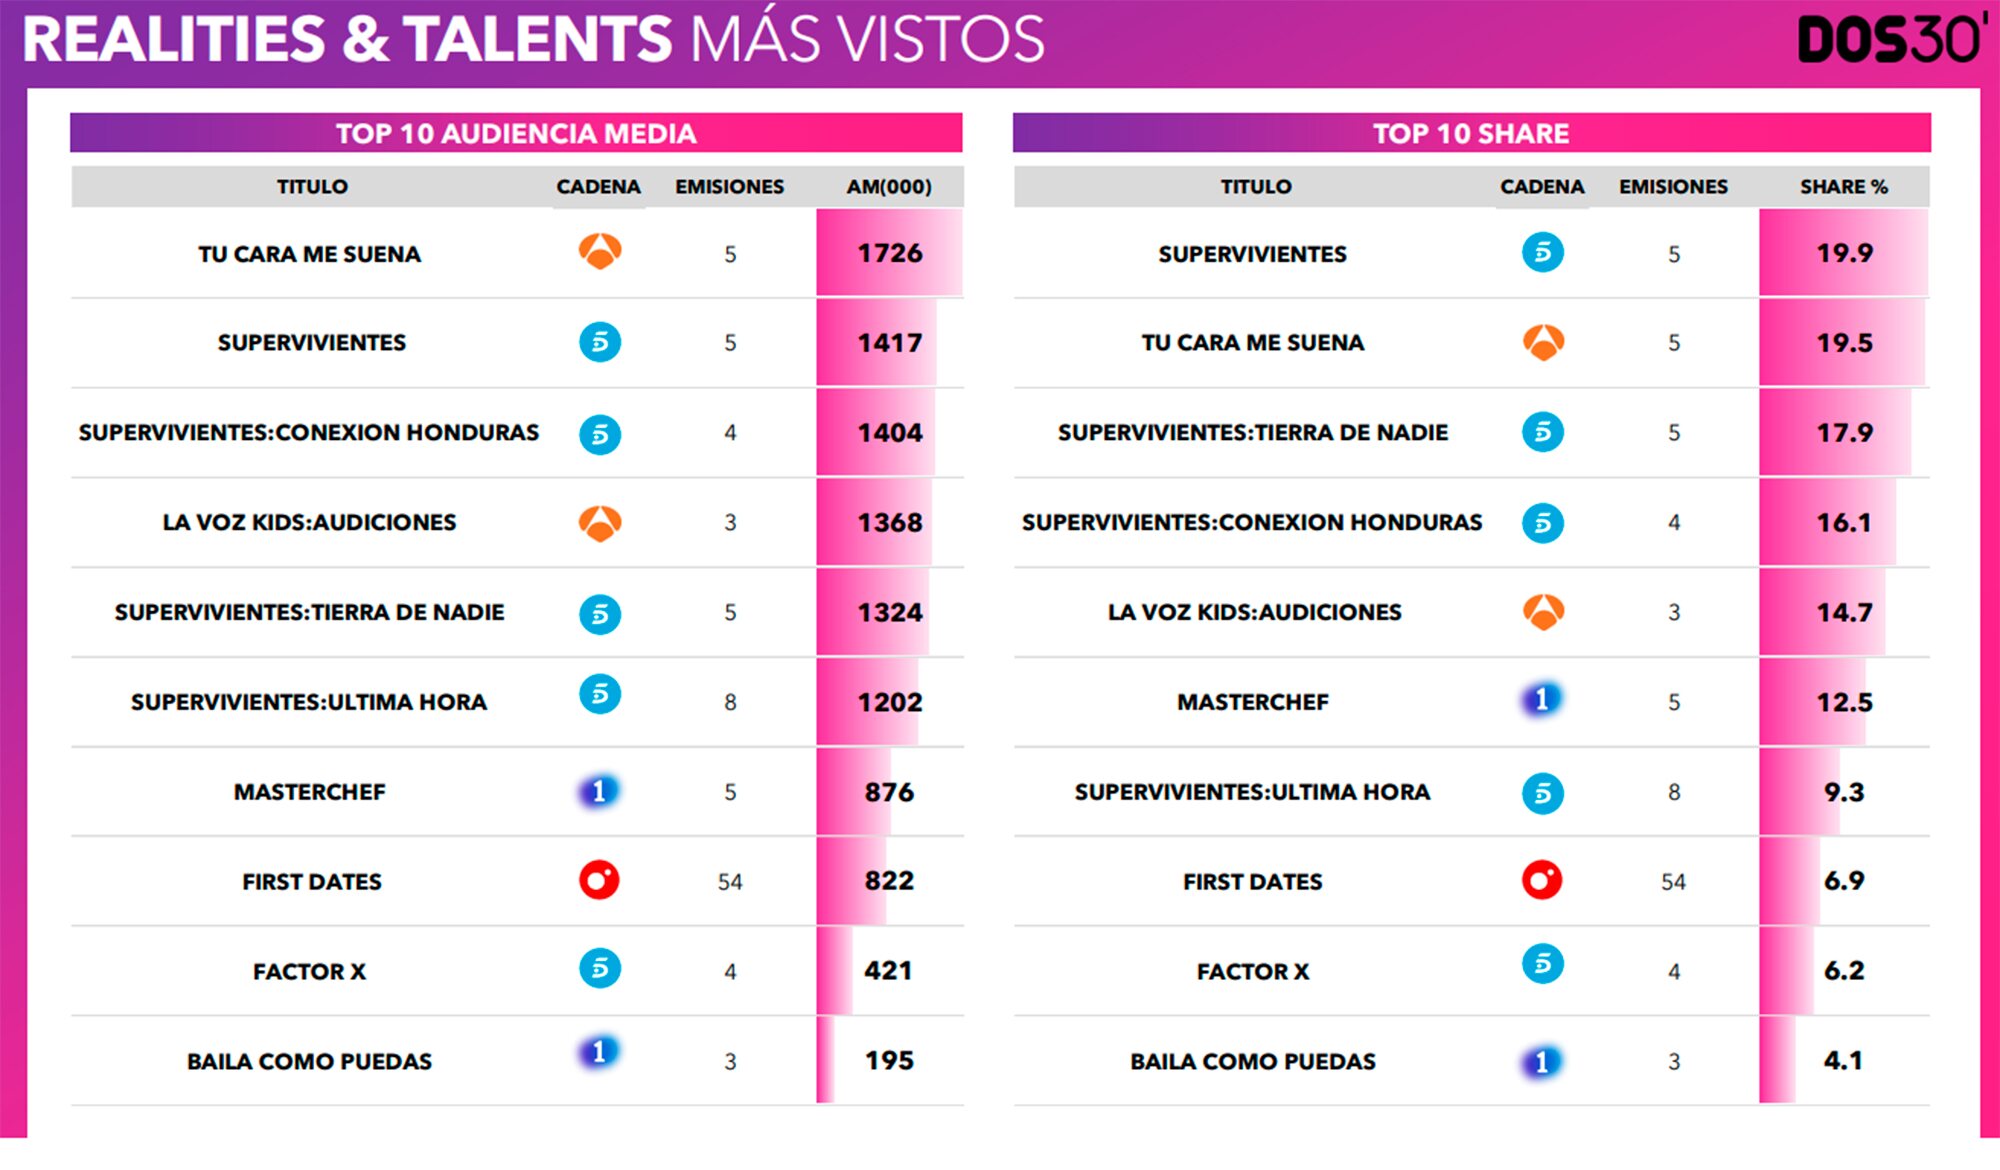 Realities/talents más vistos